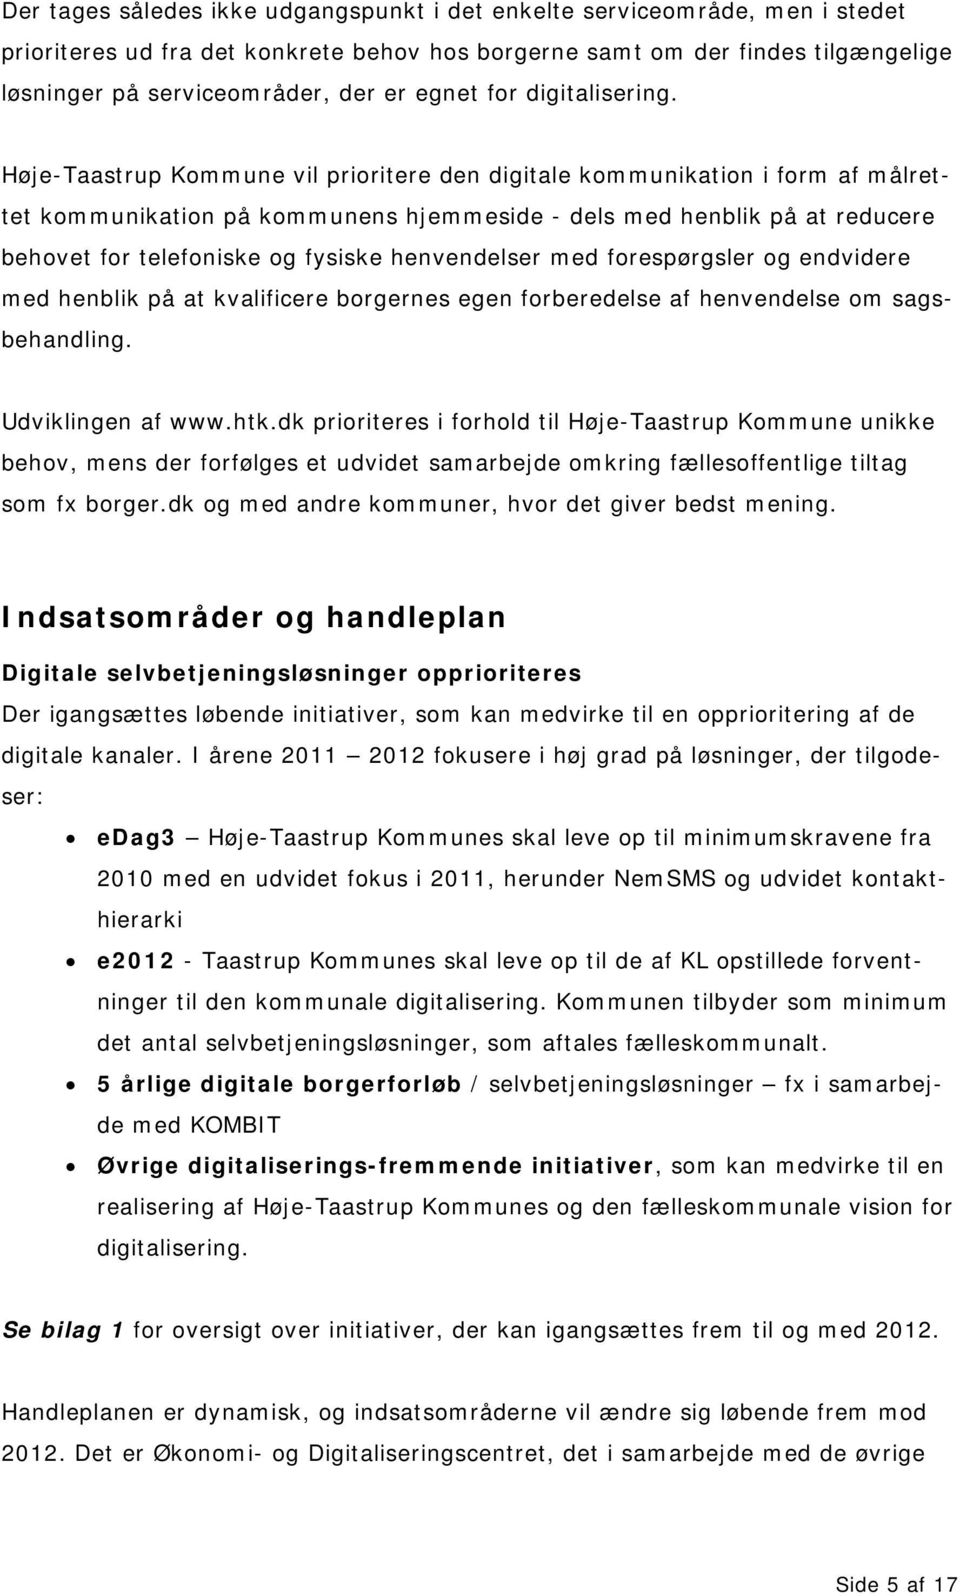 Høje-Taastrup Kommune vil prioritere den digitale kommunikation i form af målrettet kommunikation på kommunens hjemmeside - dels med henblik på at reducere behovet for telefoniske og fysiske